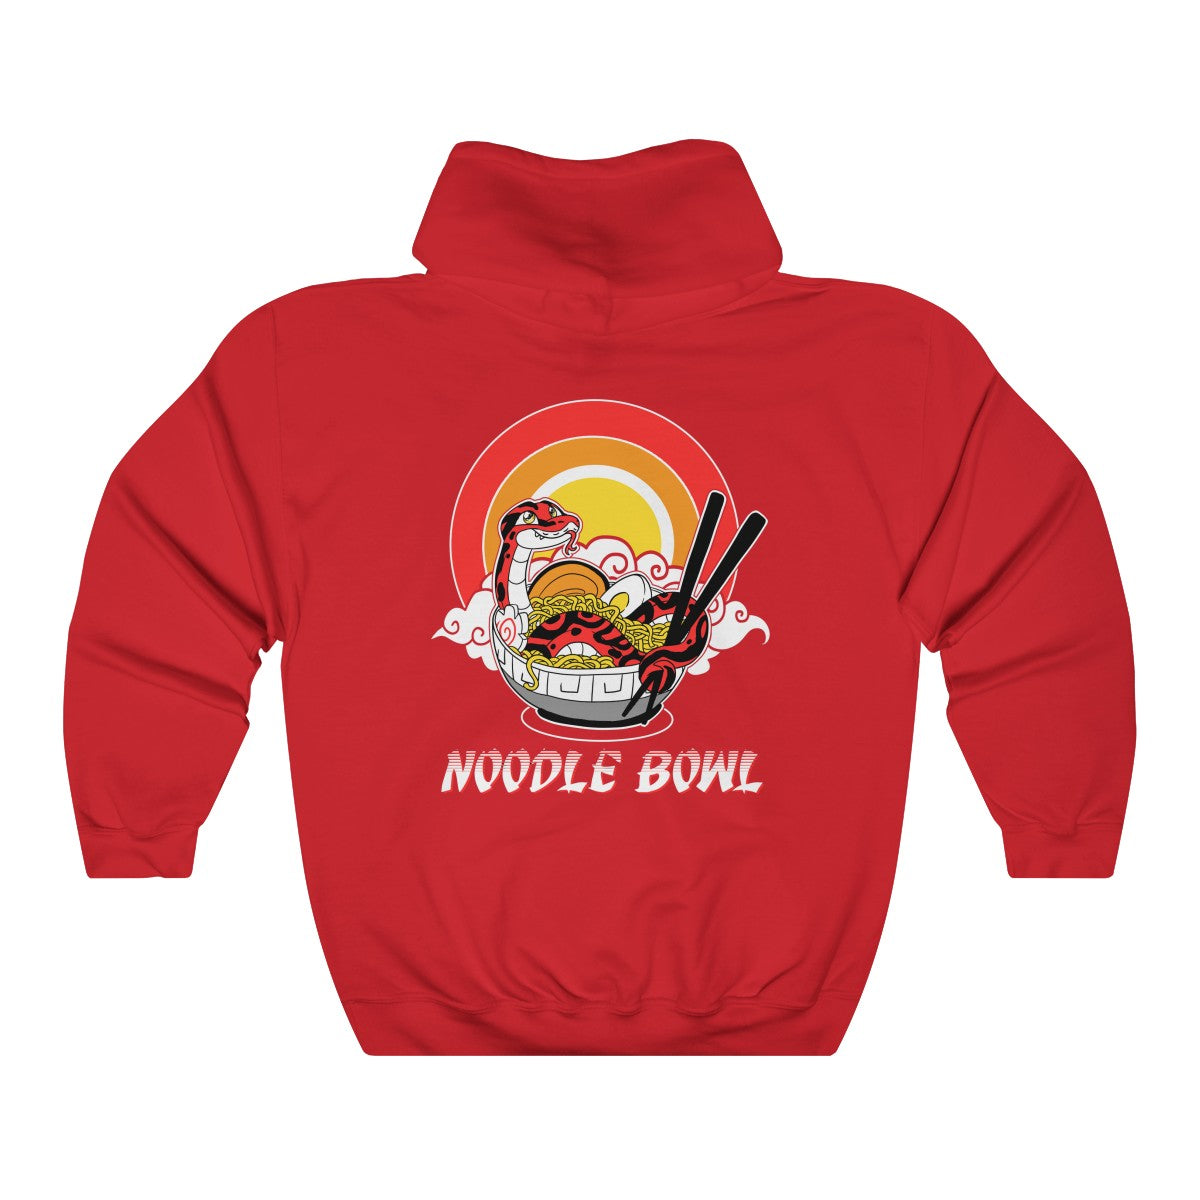 Noodle Bowl - Hoodie Hoodie Crunchy Crowe Red S 